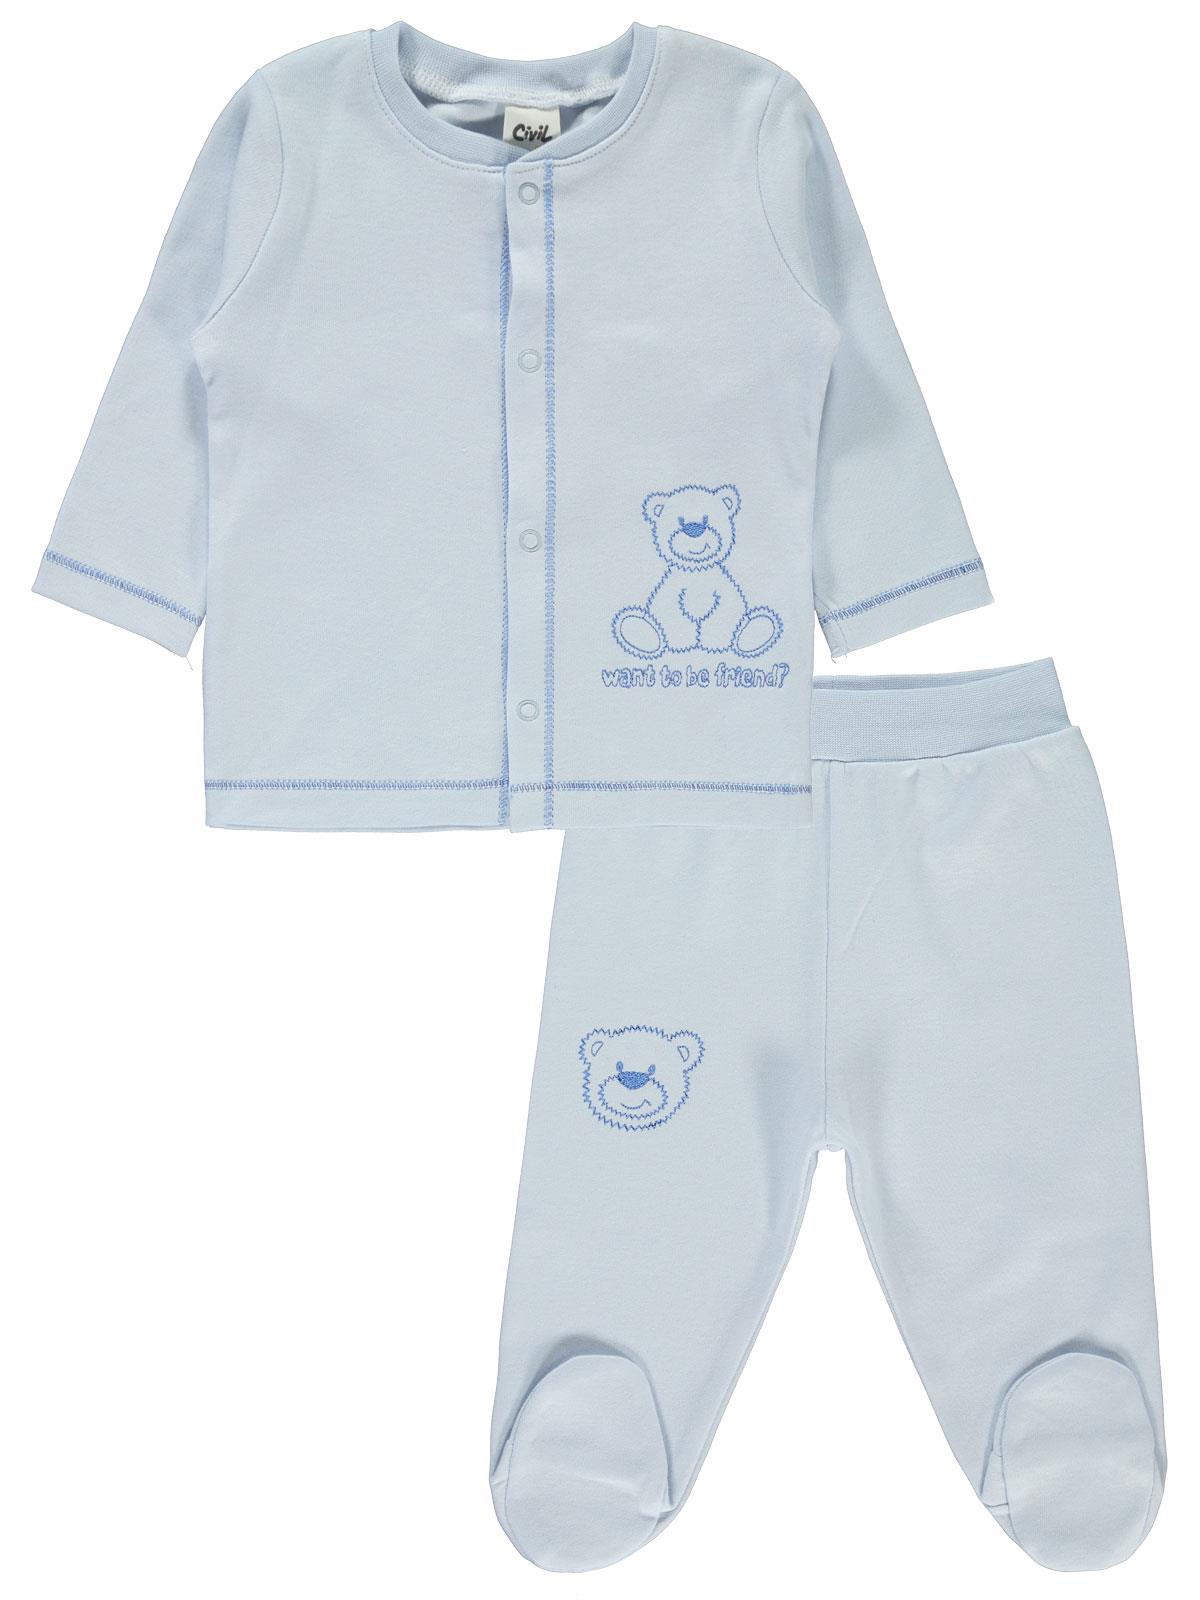 Civil Baby Bebek Pijama Takımı 3-6 Ay Mavi